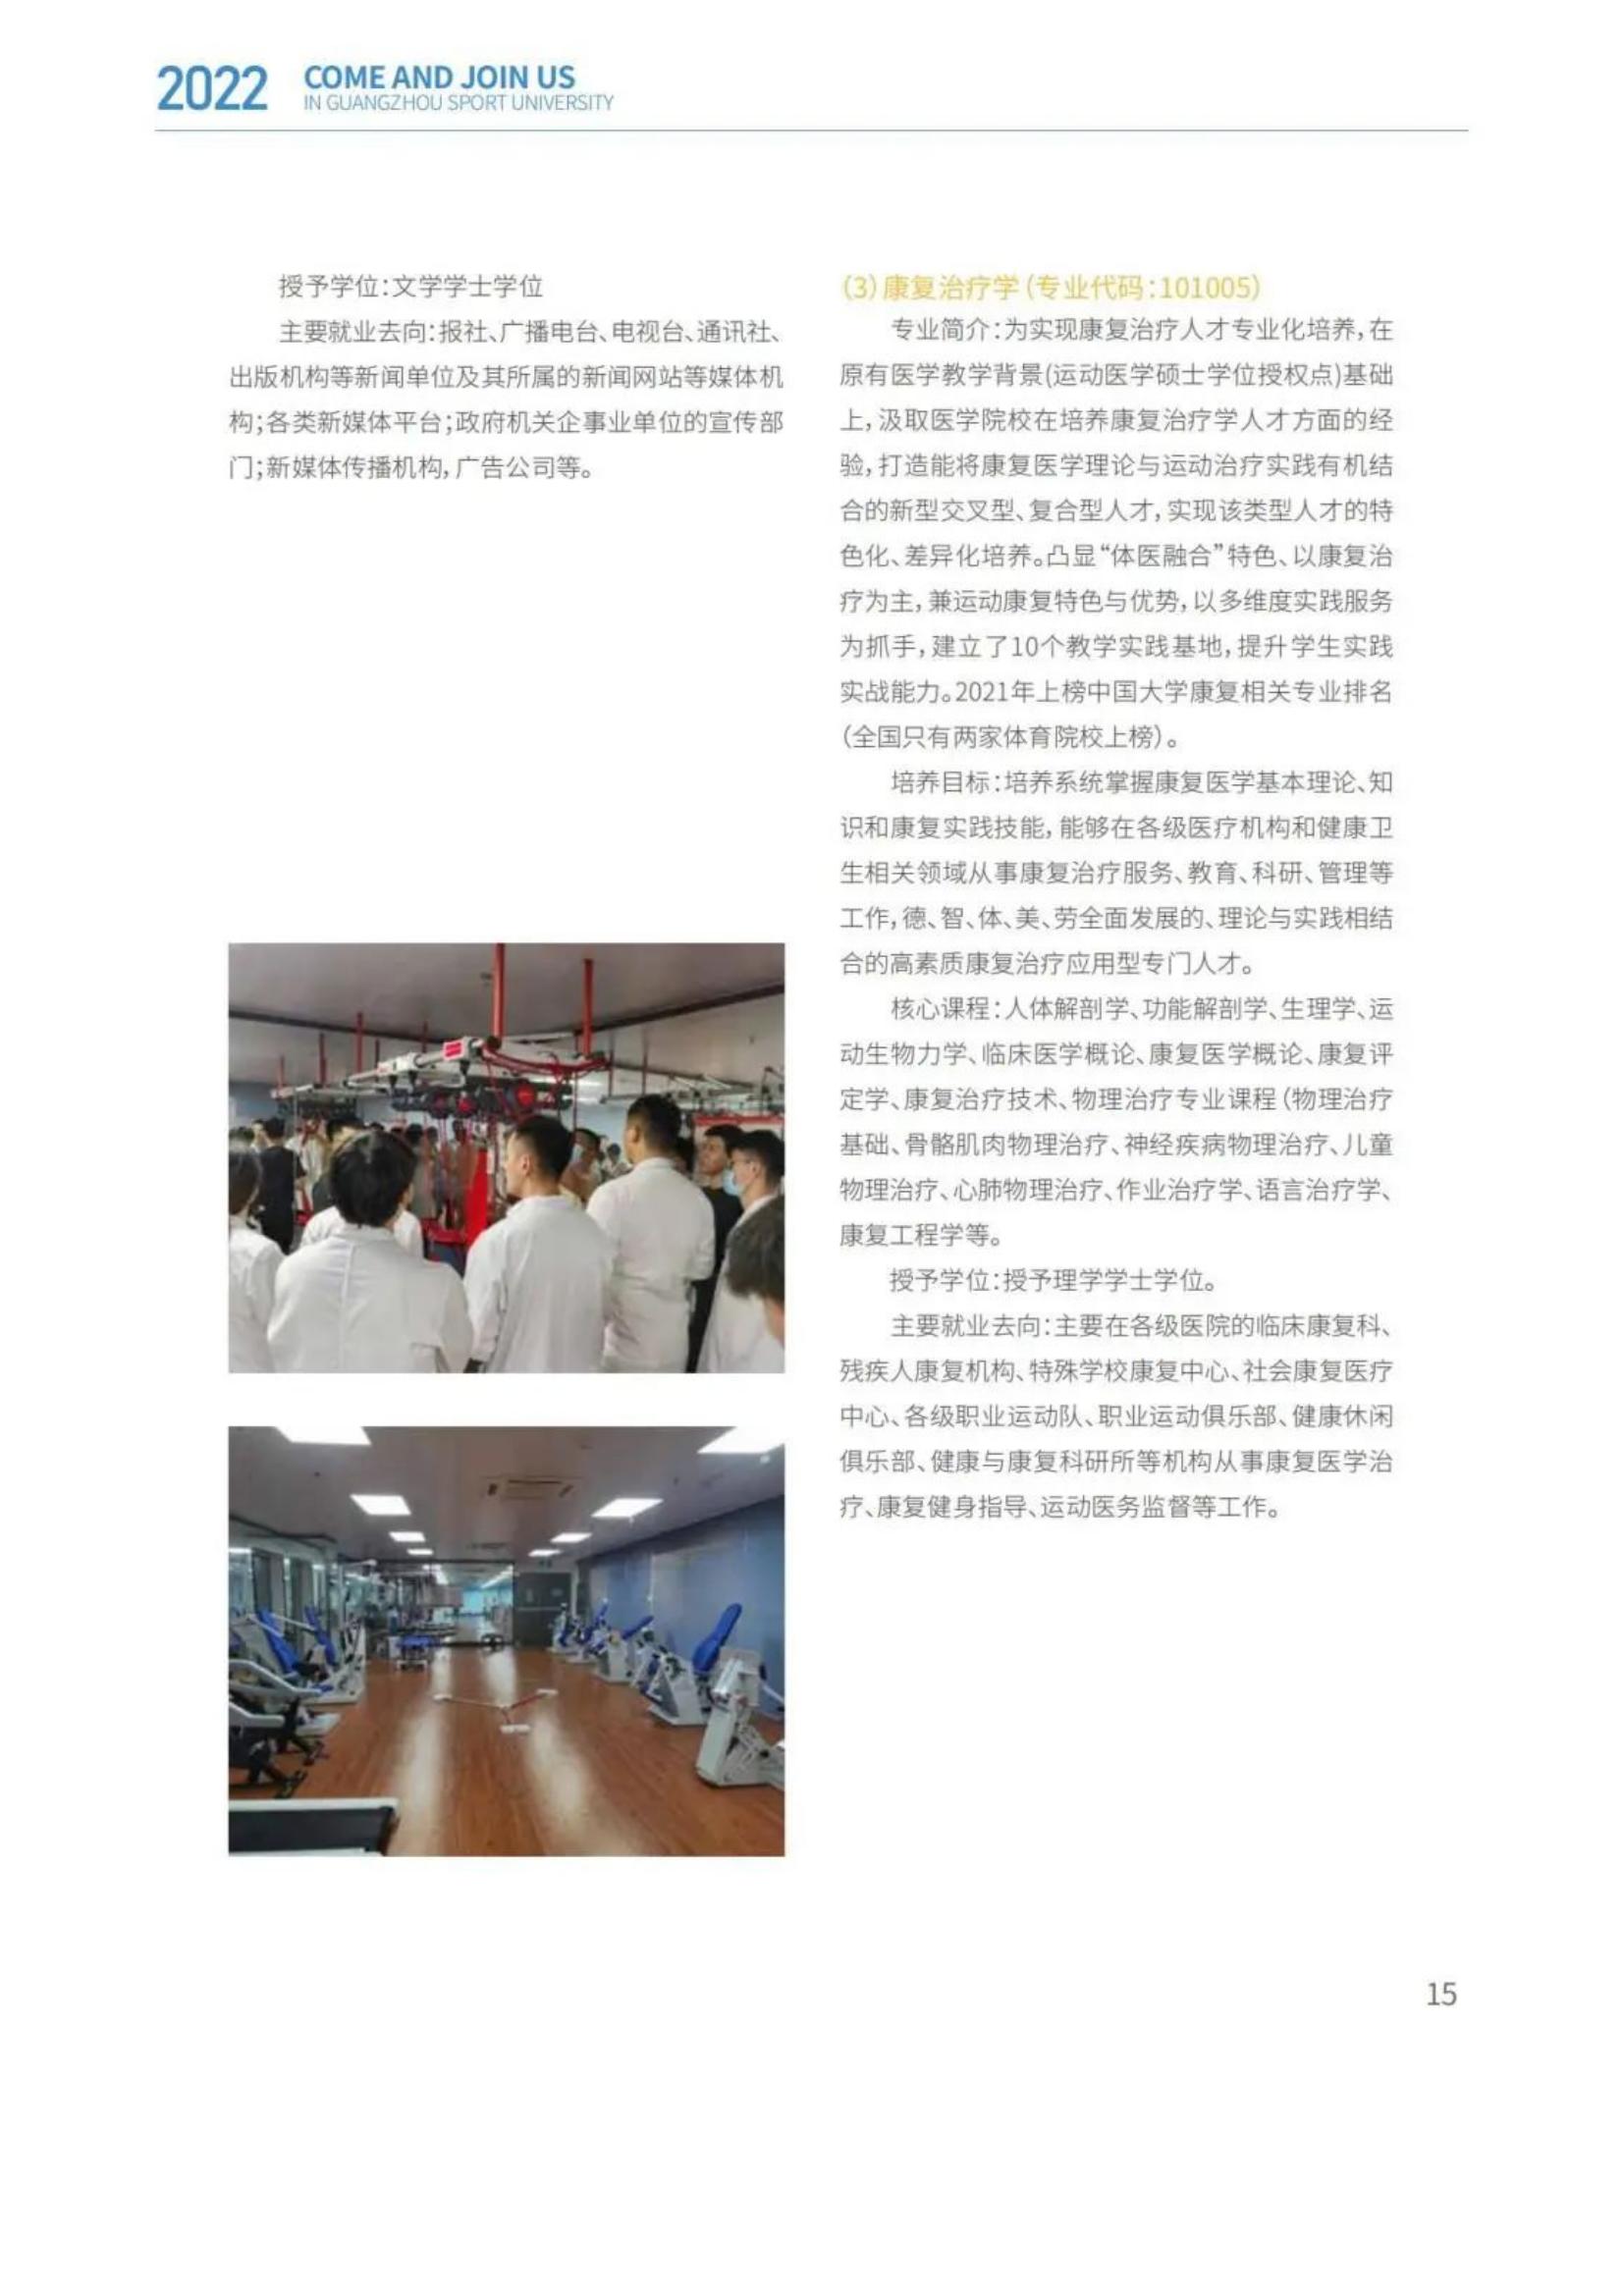 广州体育学院2022年报考指南发布_17.jpg